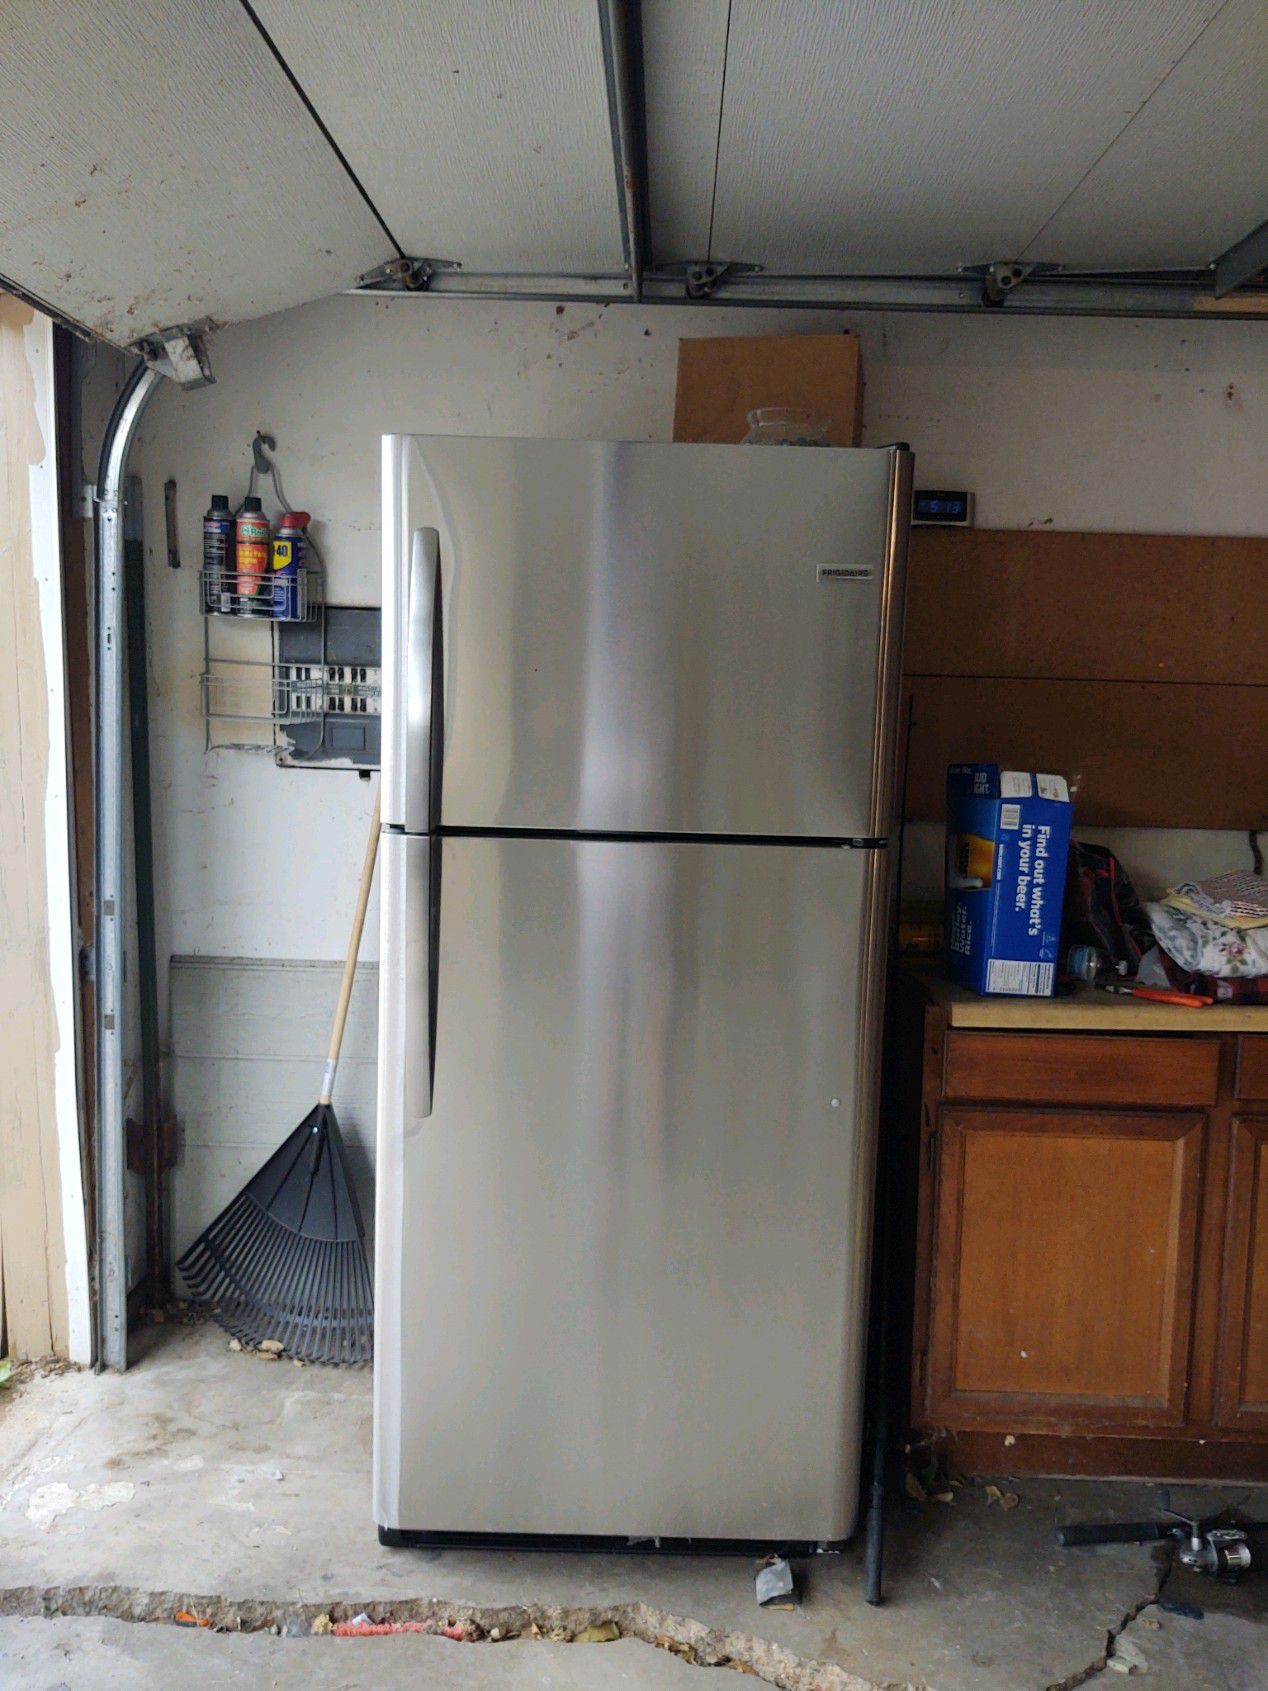 Frigidaire refrigerator